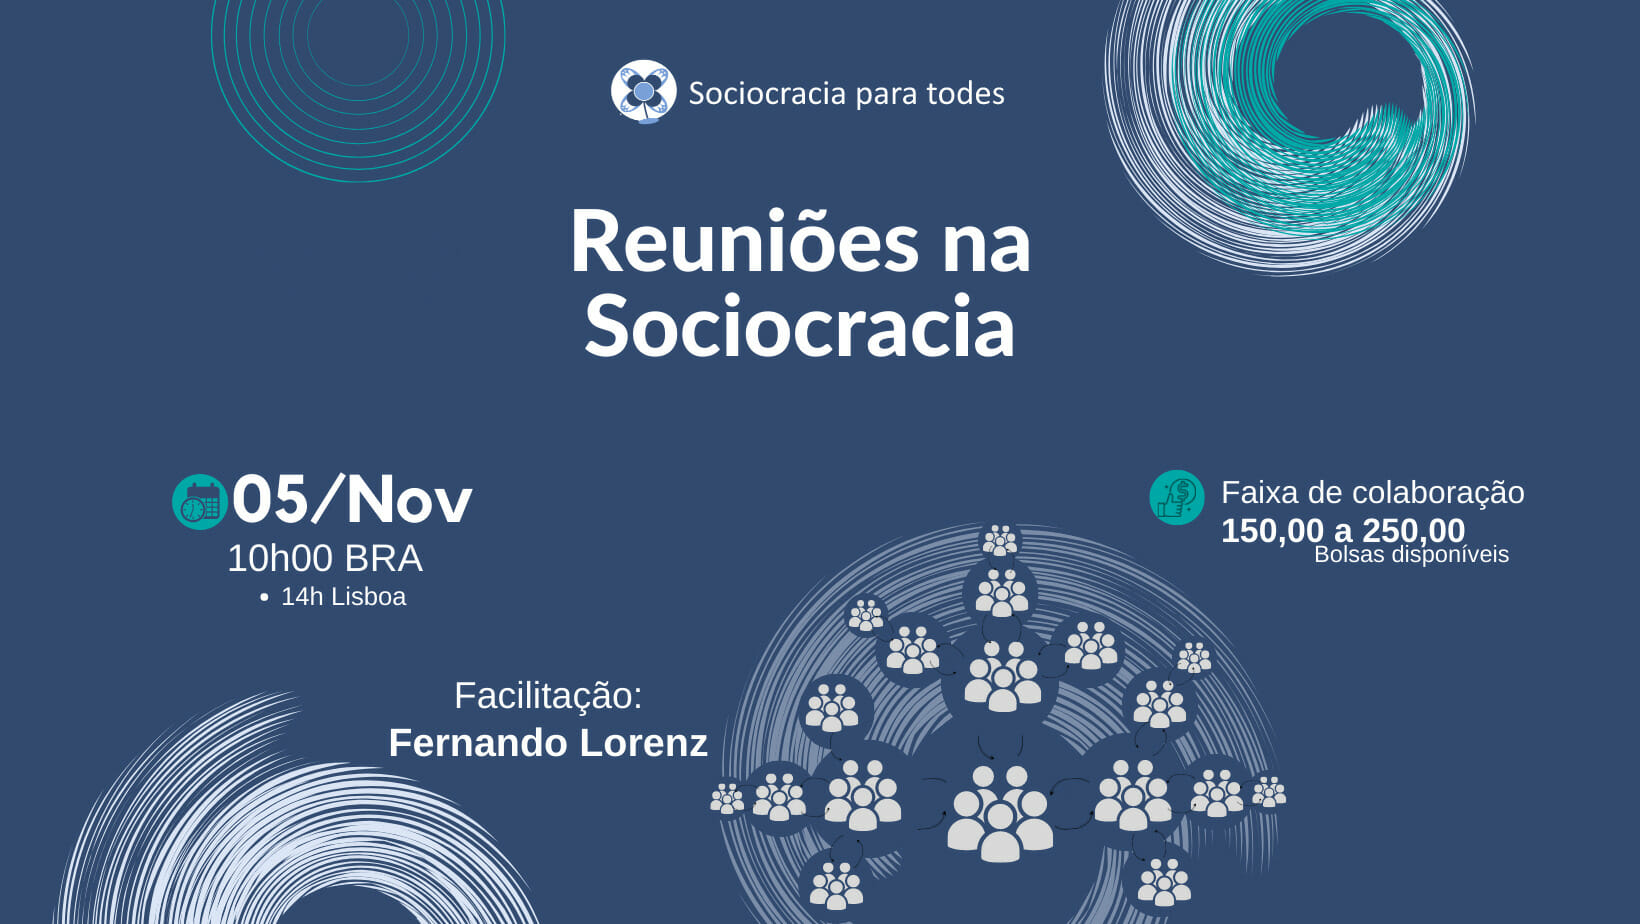 Reunioes na Sociocracia - Reuniões na Sociocracia - Sociocracy For All